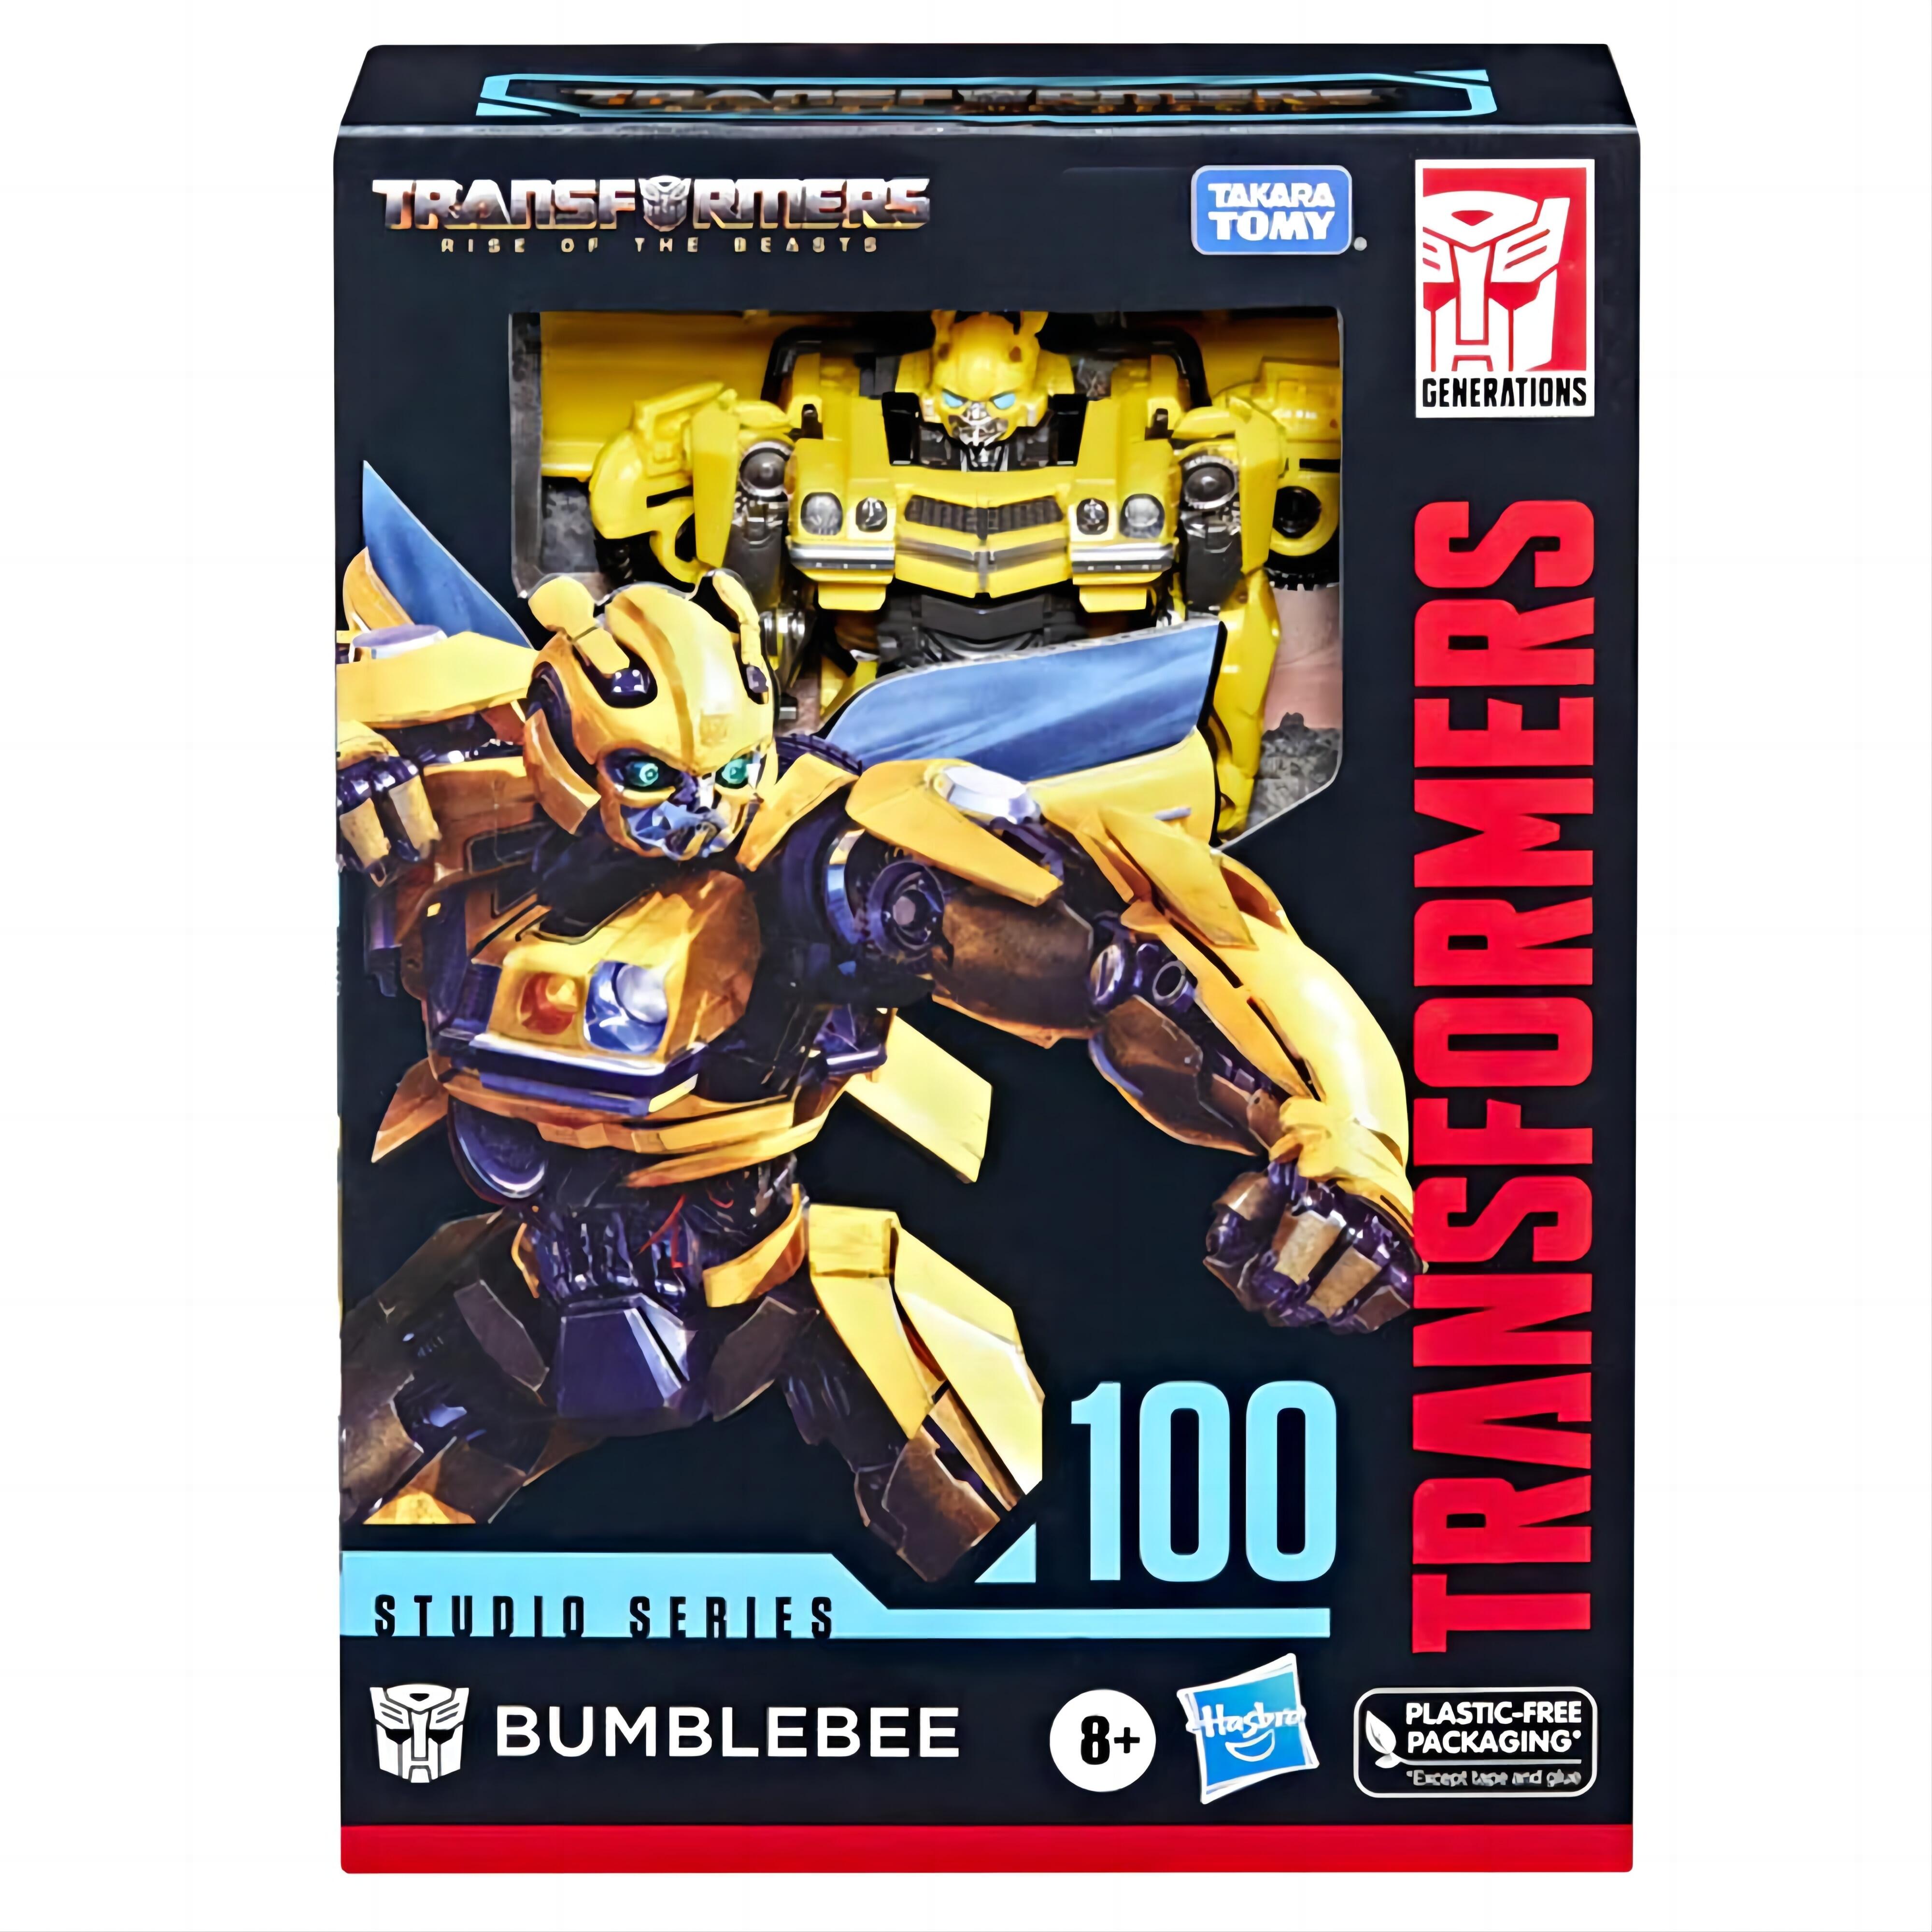 Transformers Studio Series Deluxe Class 100 Bumblebee Toy